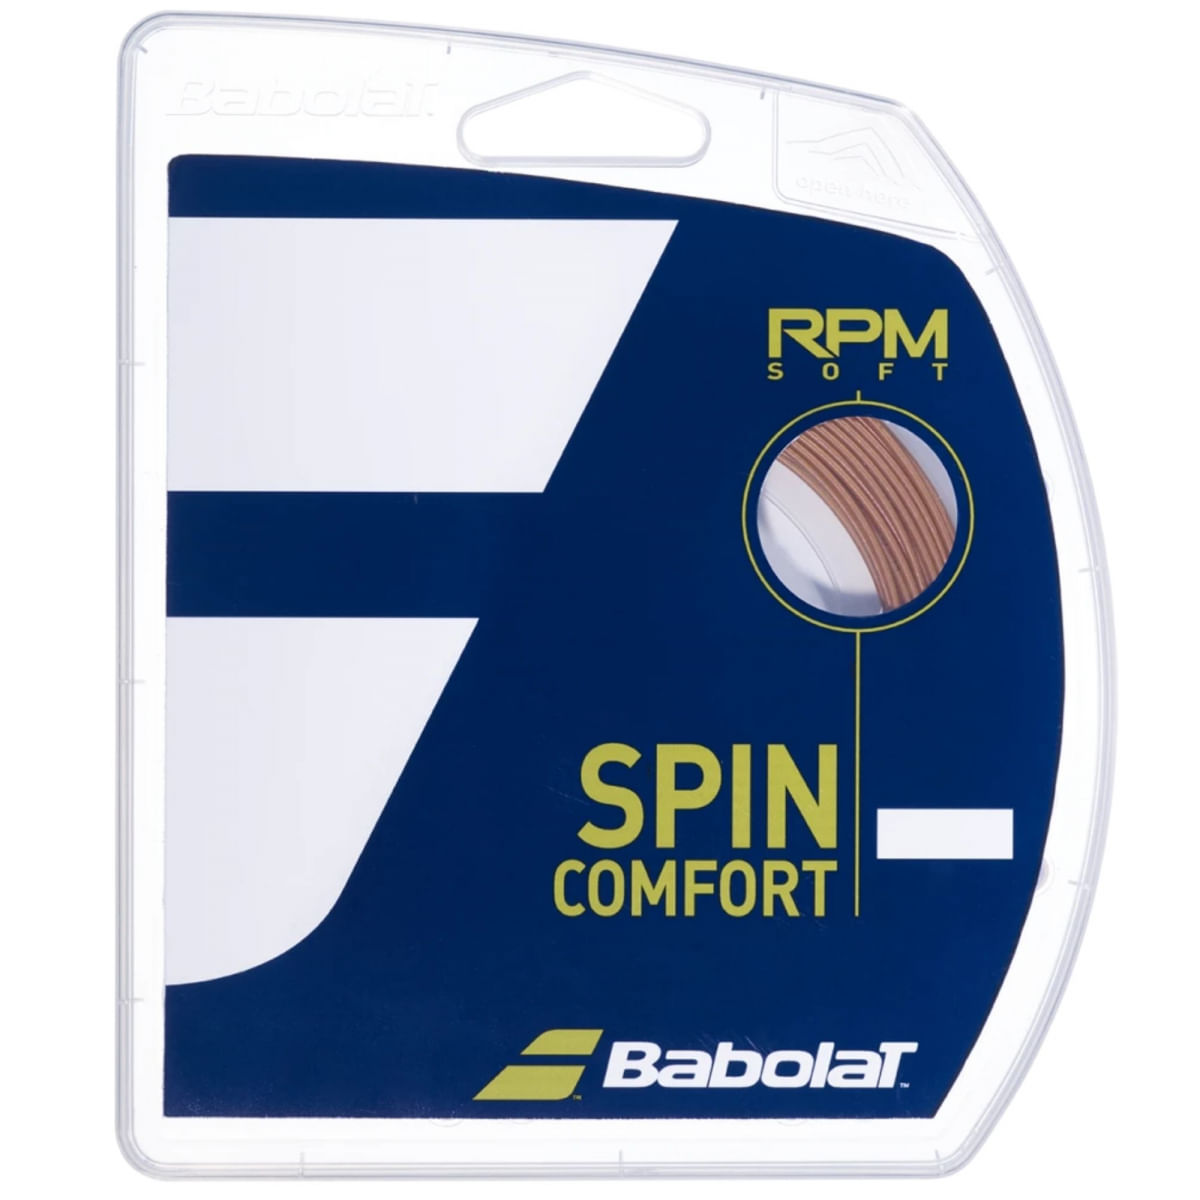 Corda de Tenis Babolat RPM SOFT 1.30MM SET Individual